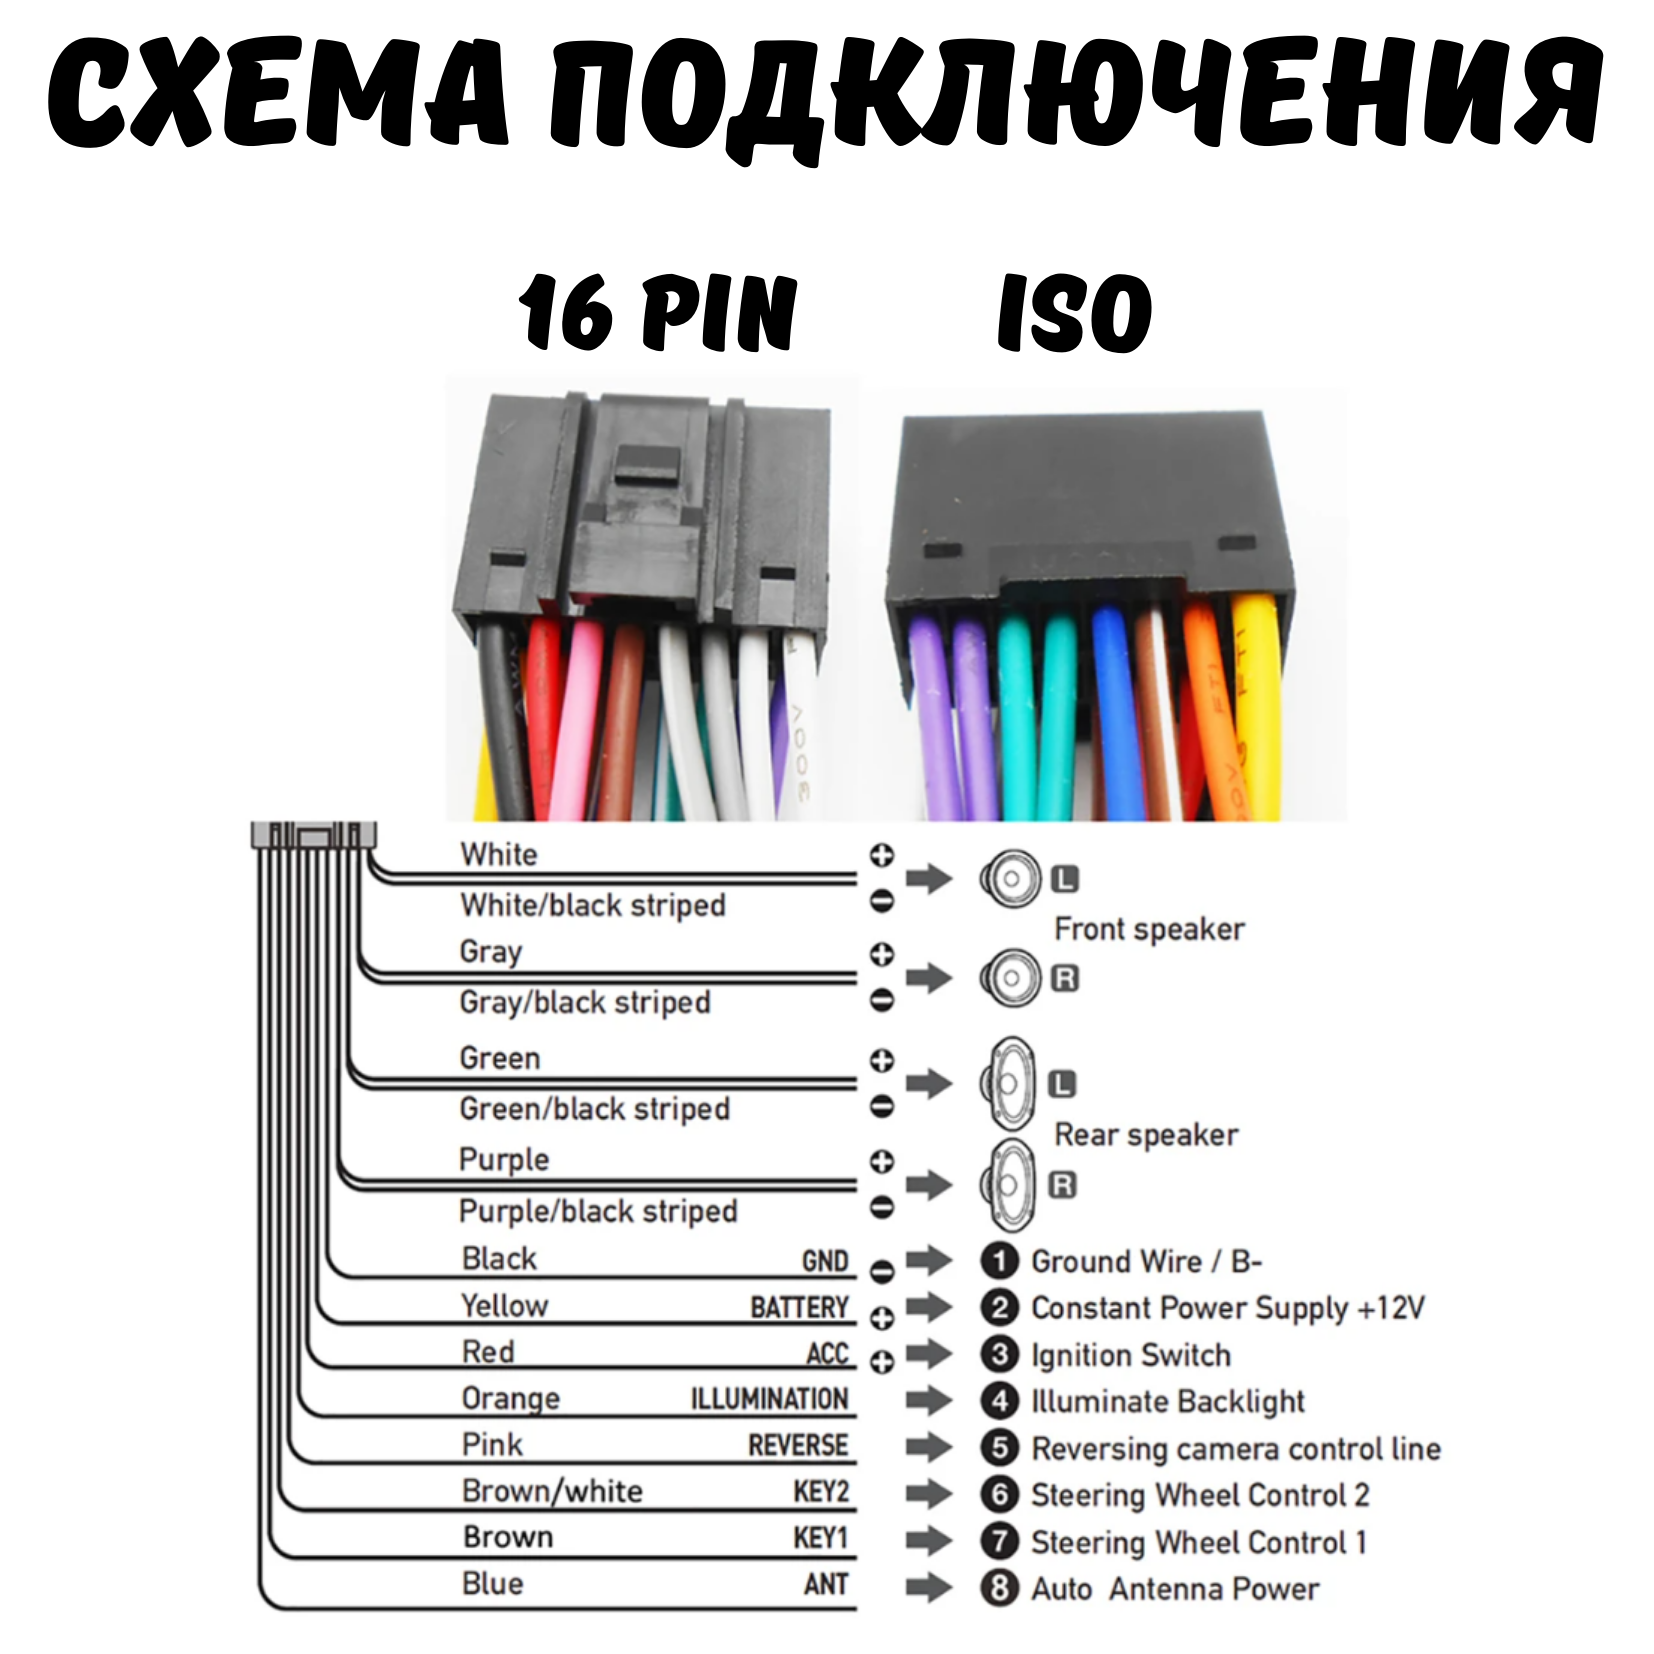 ISO переходник для подключения андроид автомагнитол 16 pin